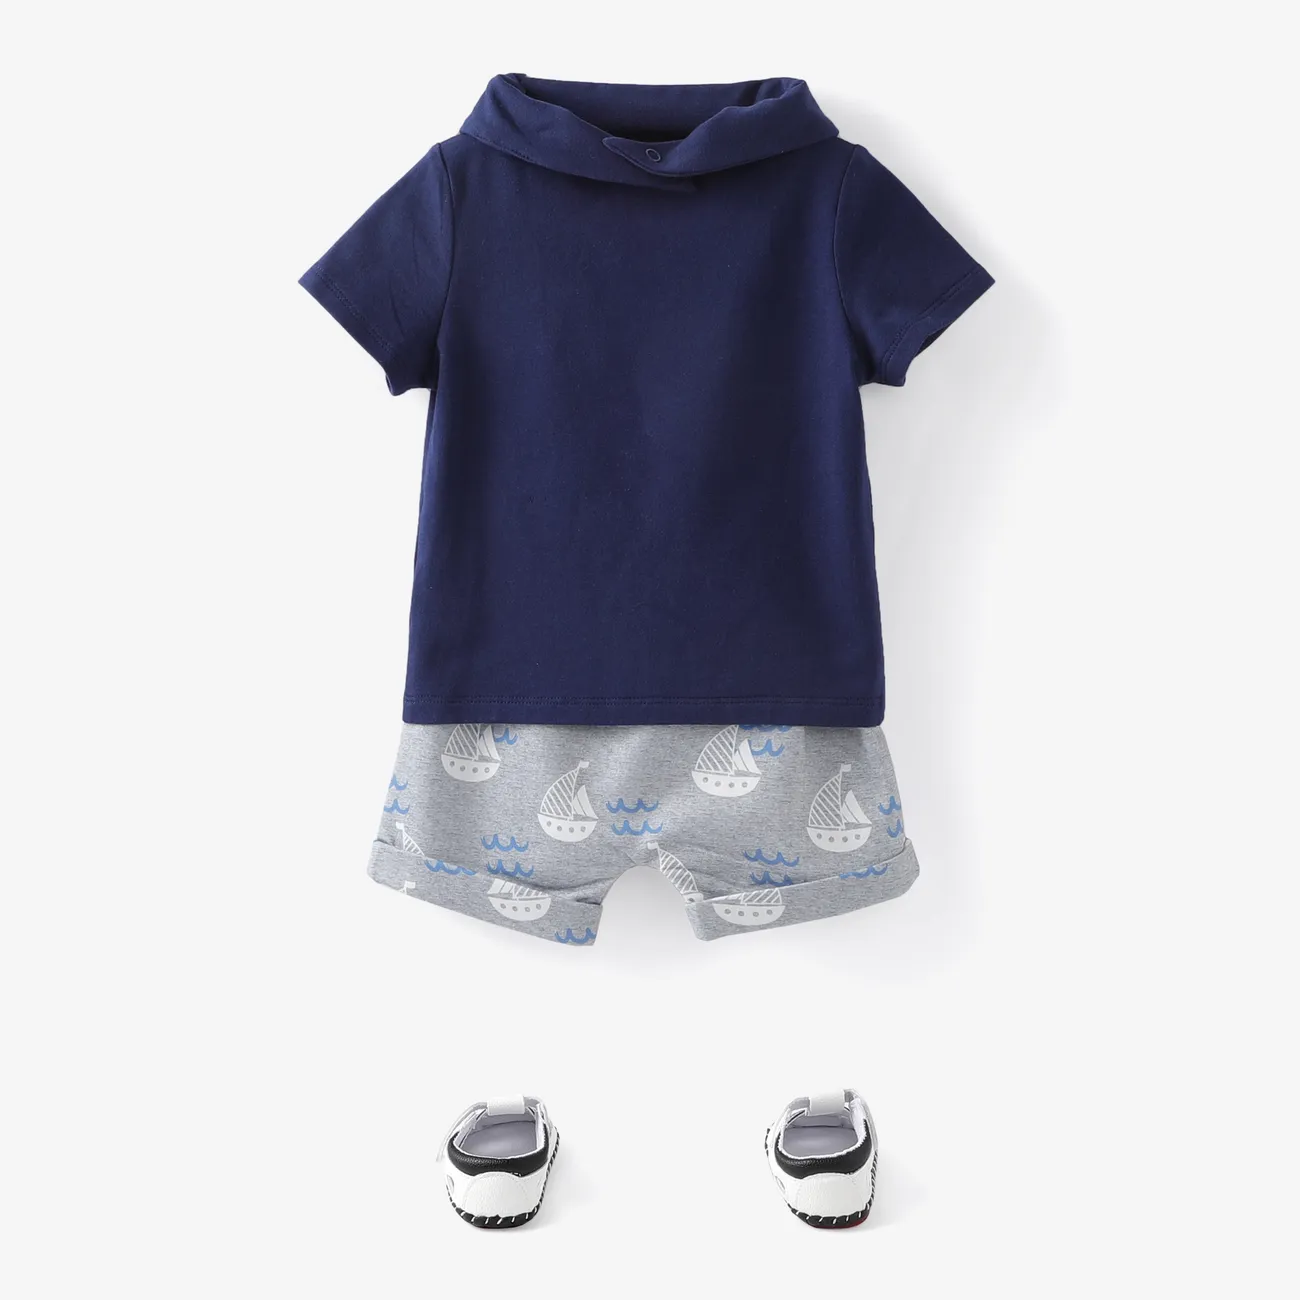 Baby Boy 3pcs Sailboat Print Tee and Shorts with Bib Set DeepBlue big image 1